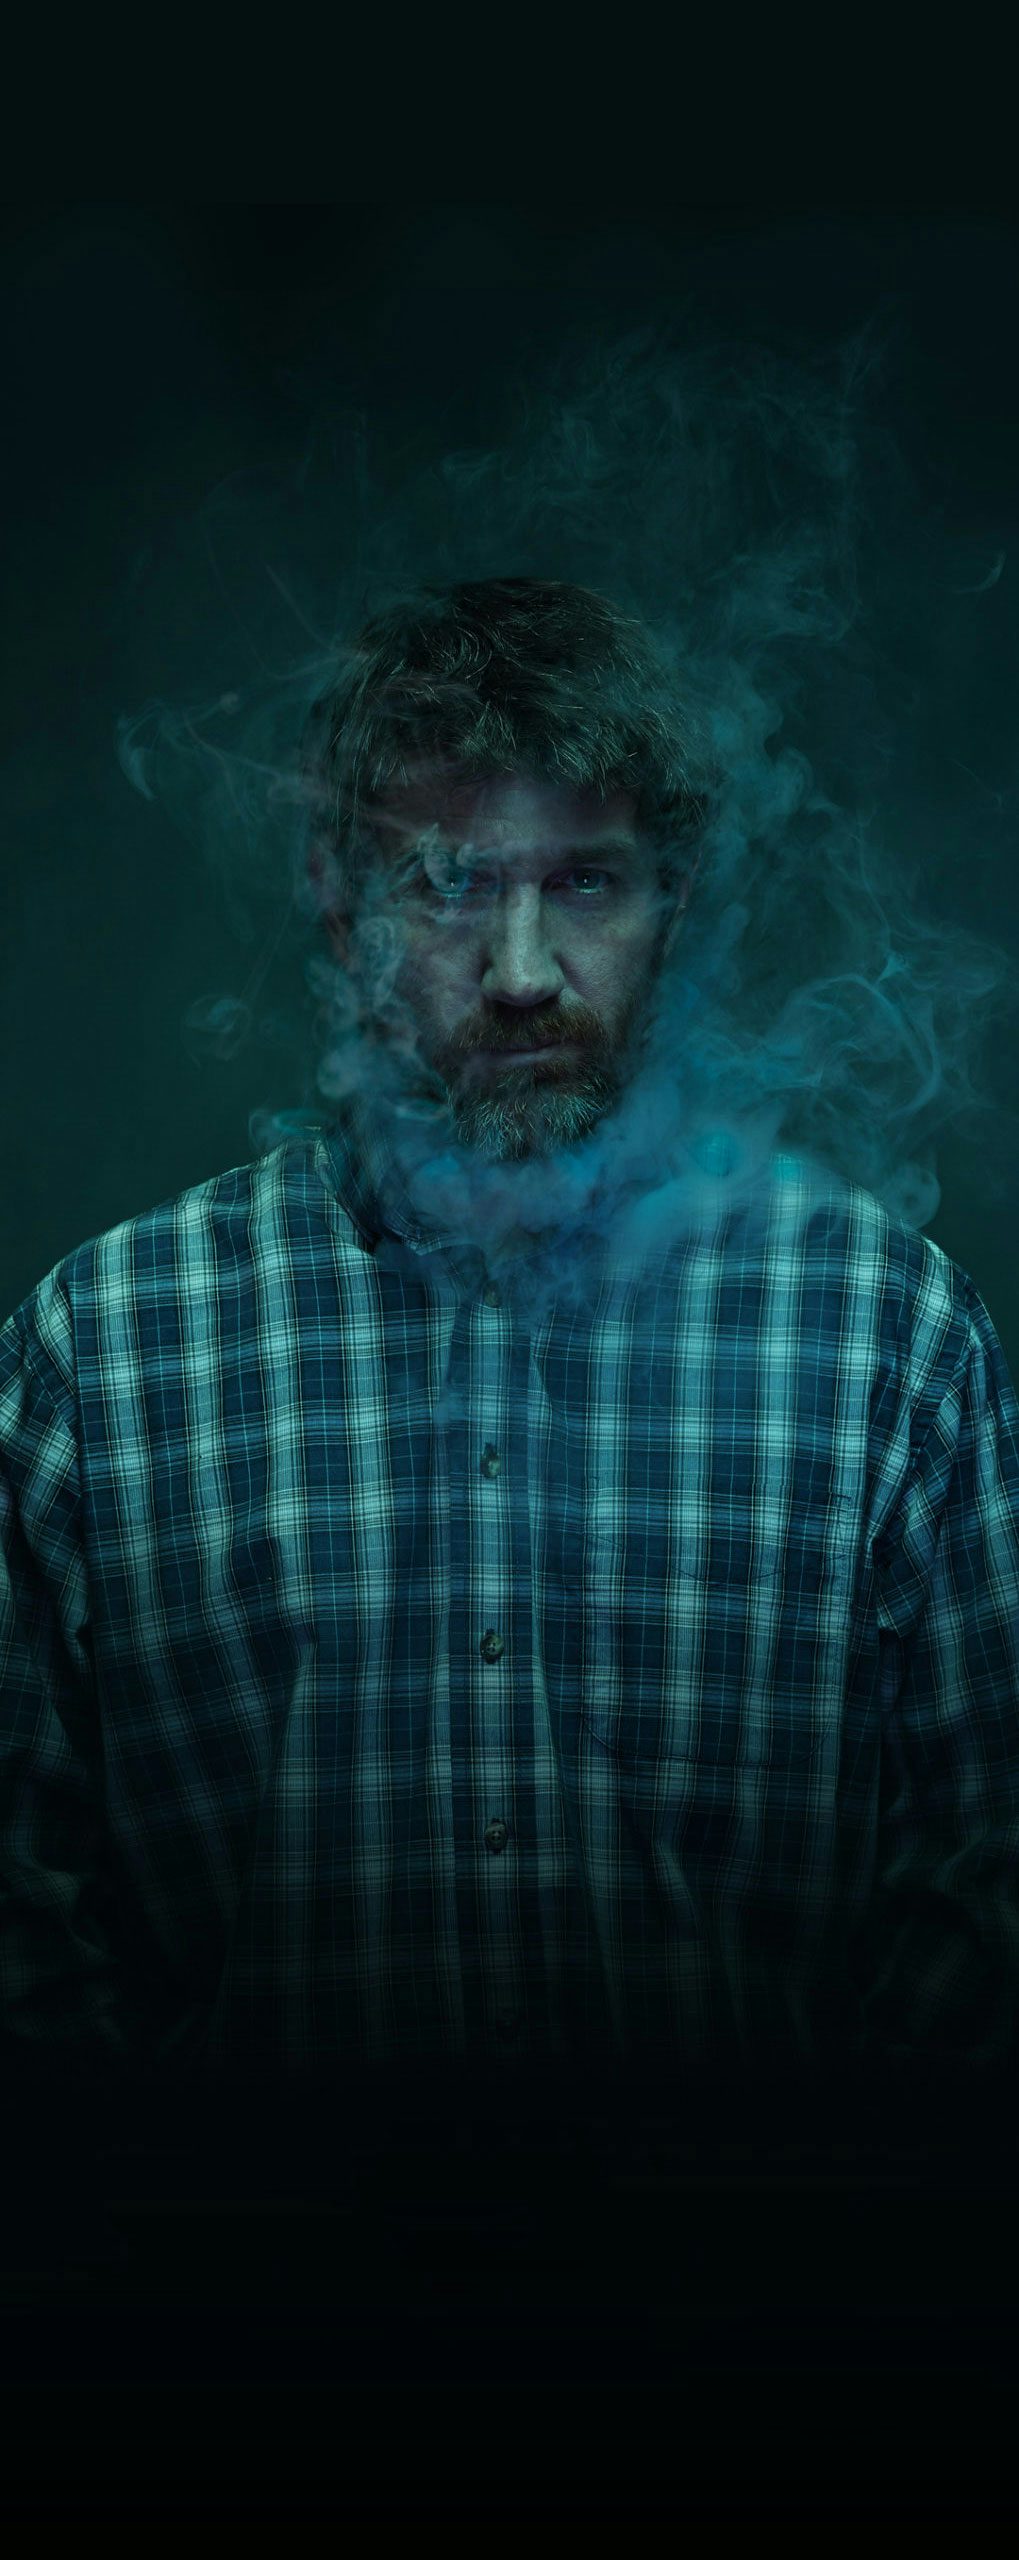 Man in dark background with smoke around face